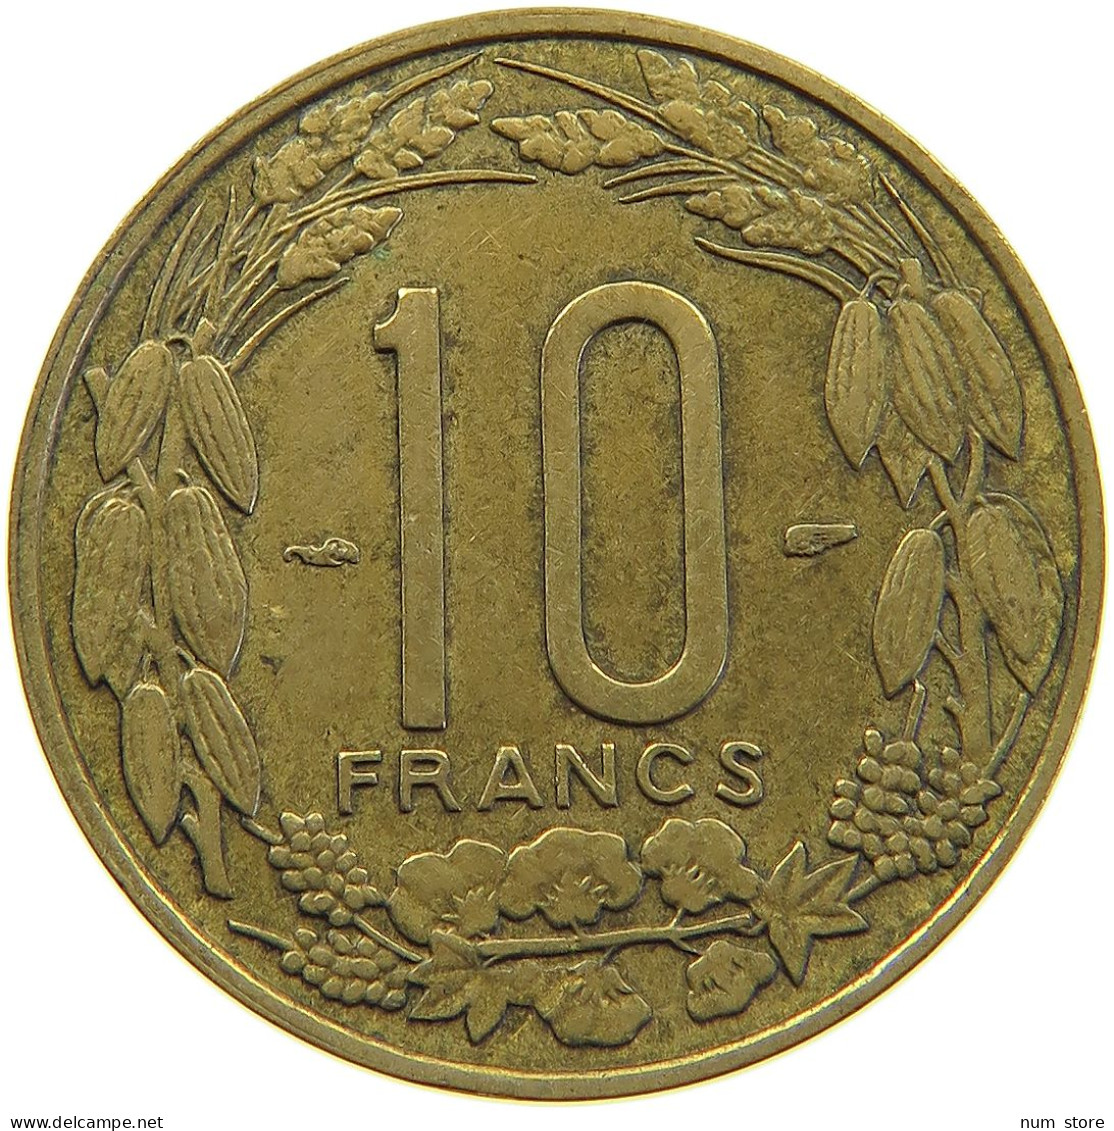 CAMEROON 10 FRANCS 1958  #c067 0365 - Cameroun